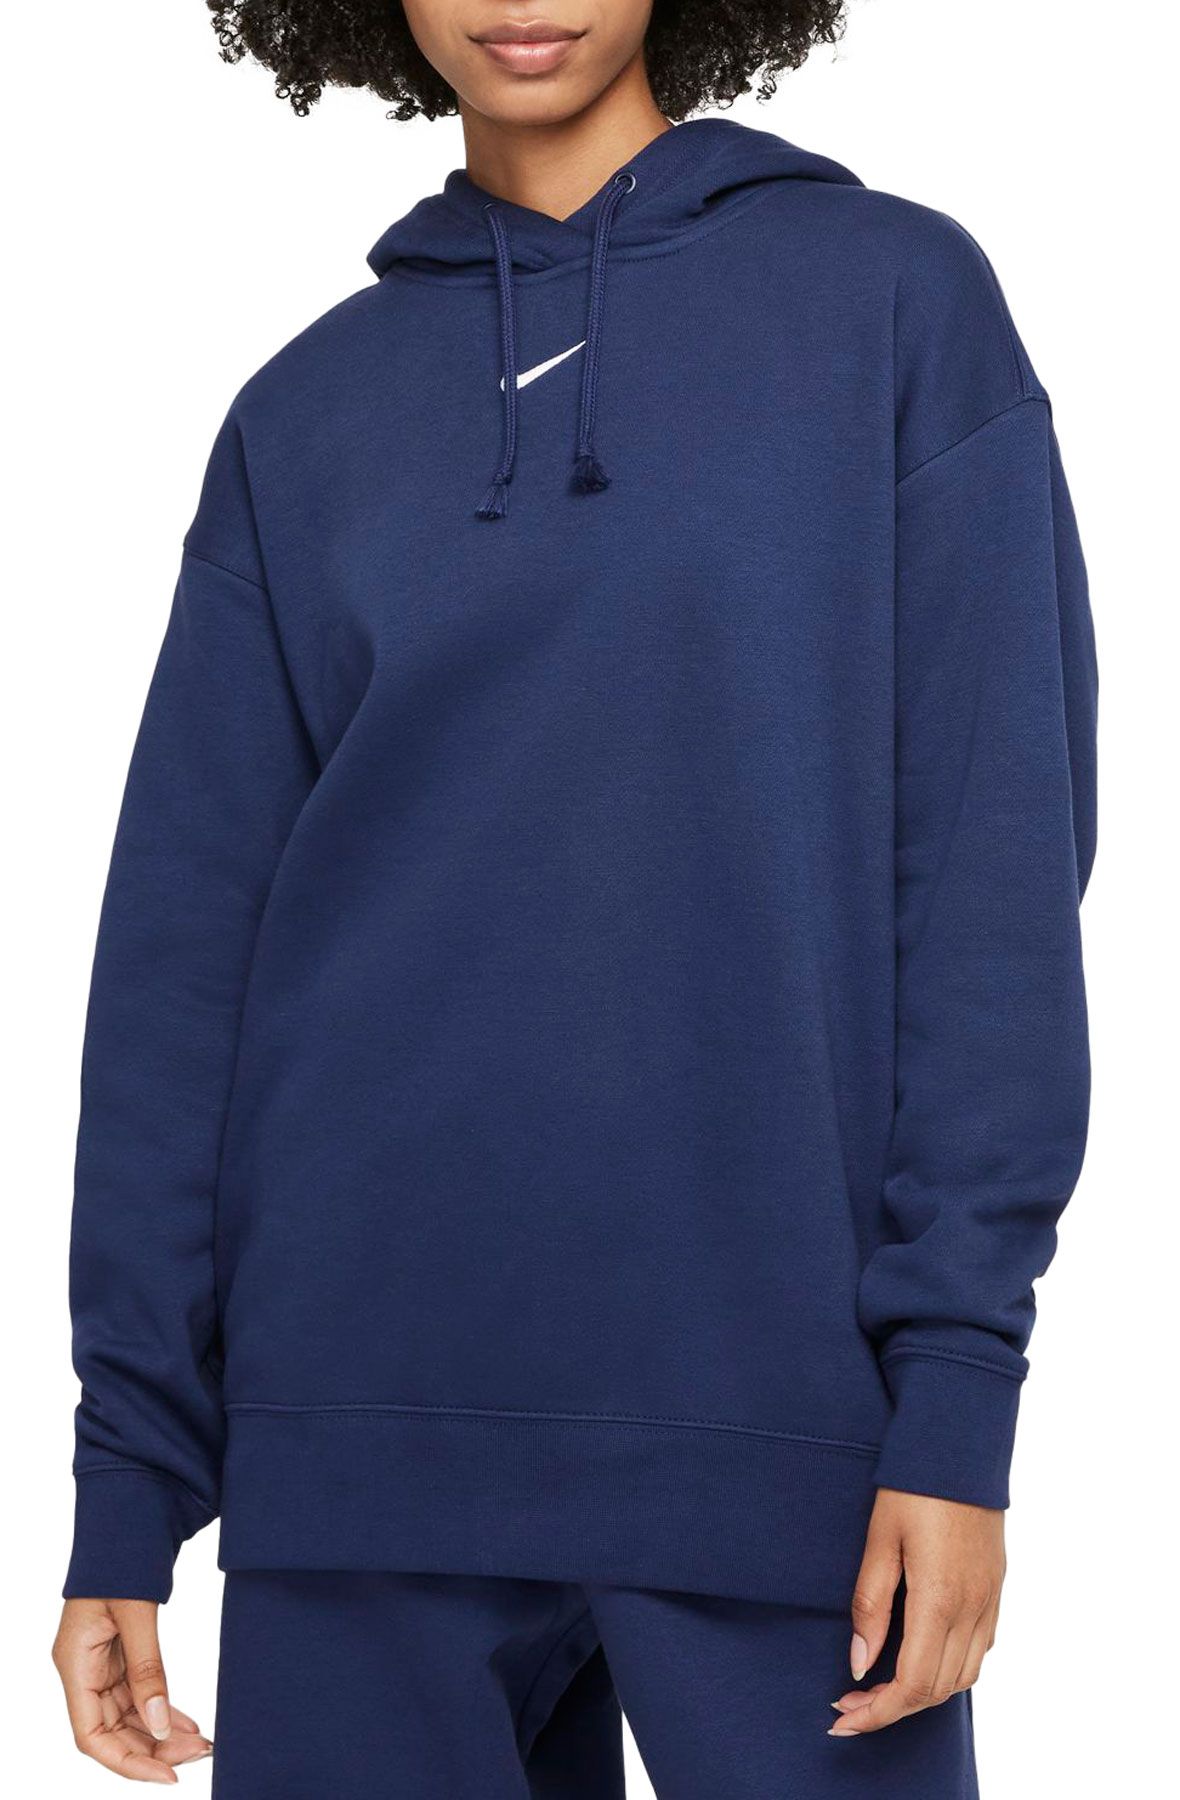 Nike / Women's Sportswear Essential Collection Oversized Fleece Hoodie